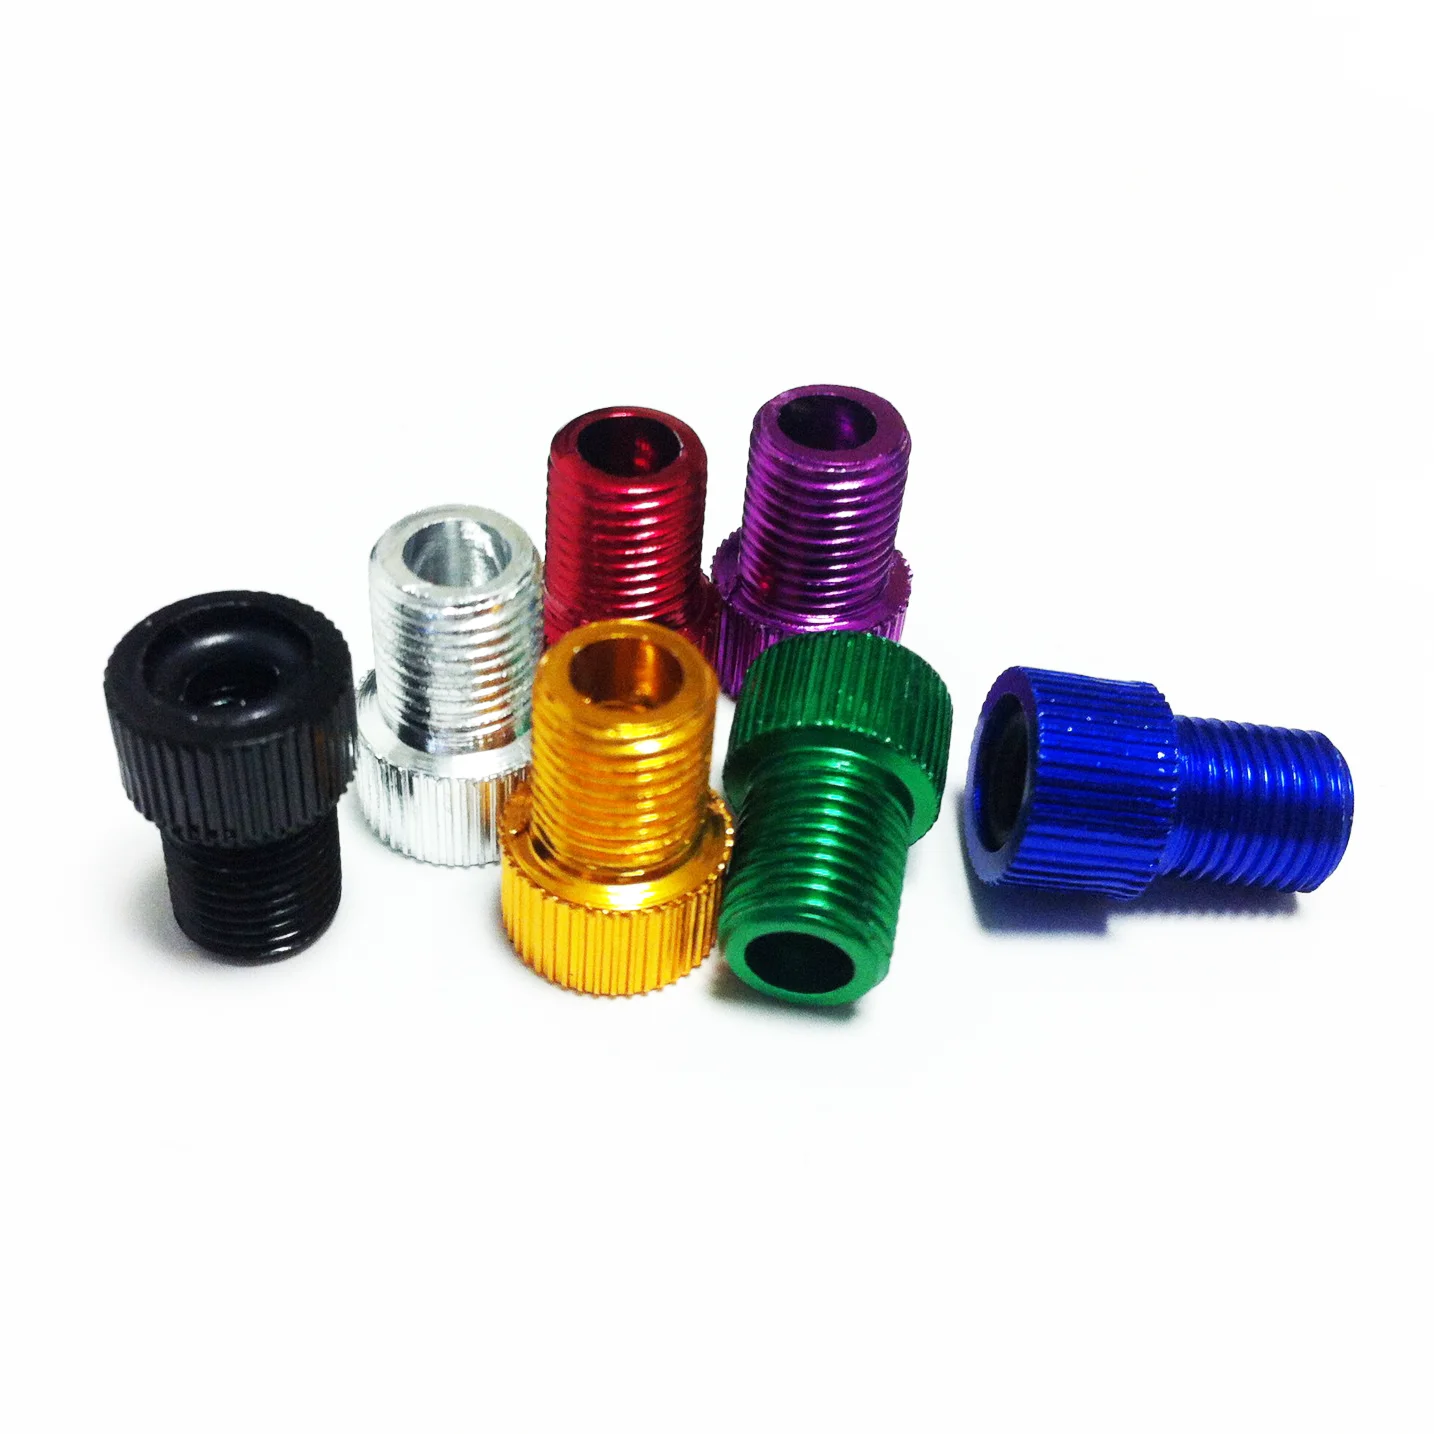 Красочные колпачки для клапанов шин, практичные колпачки для клапанов велосипеда, колпачки для клапанов шин с пластиковыми нитями